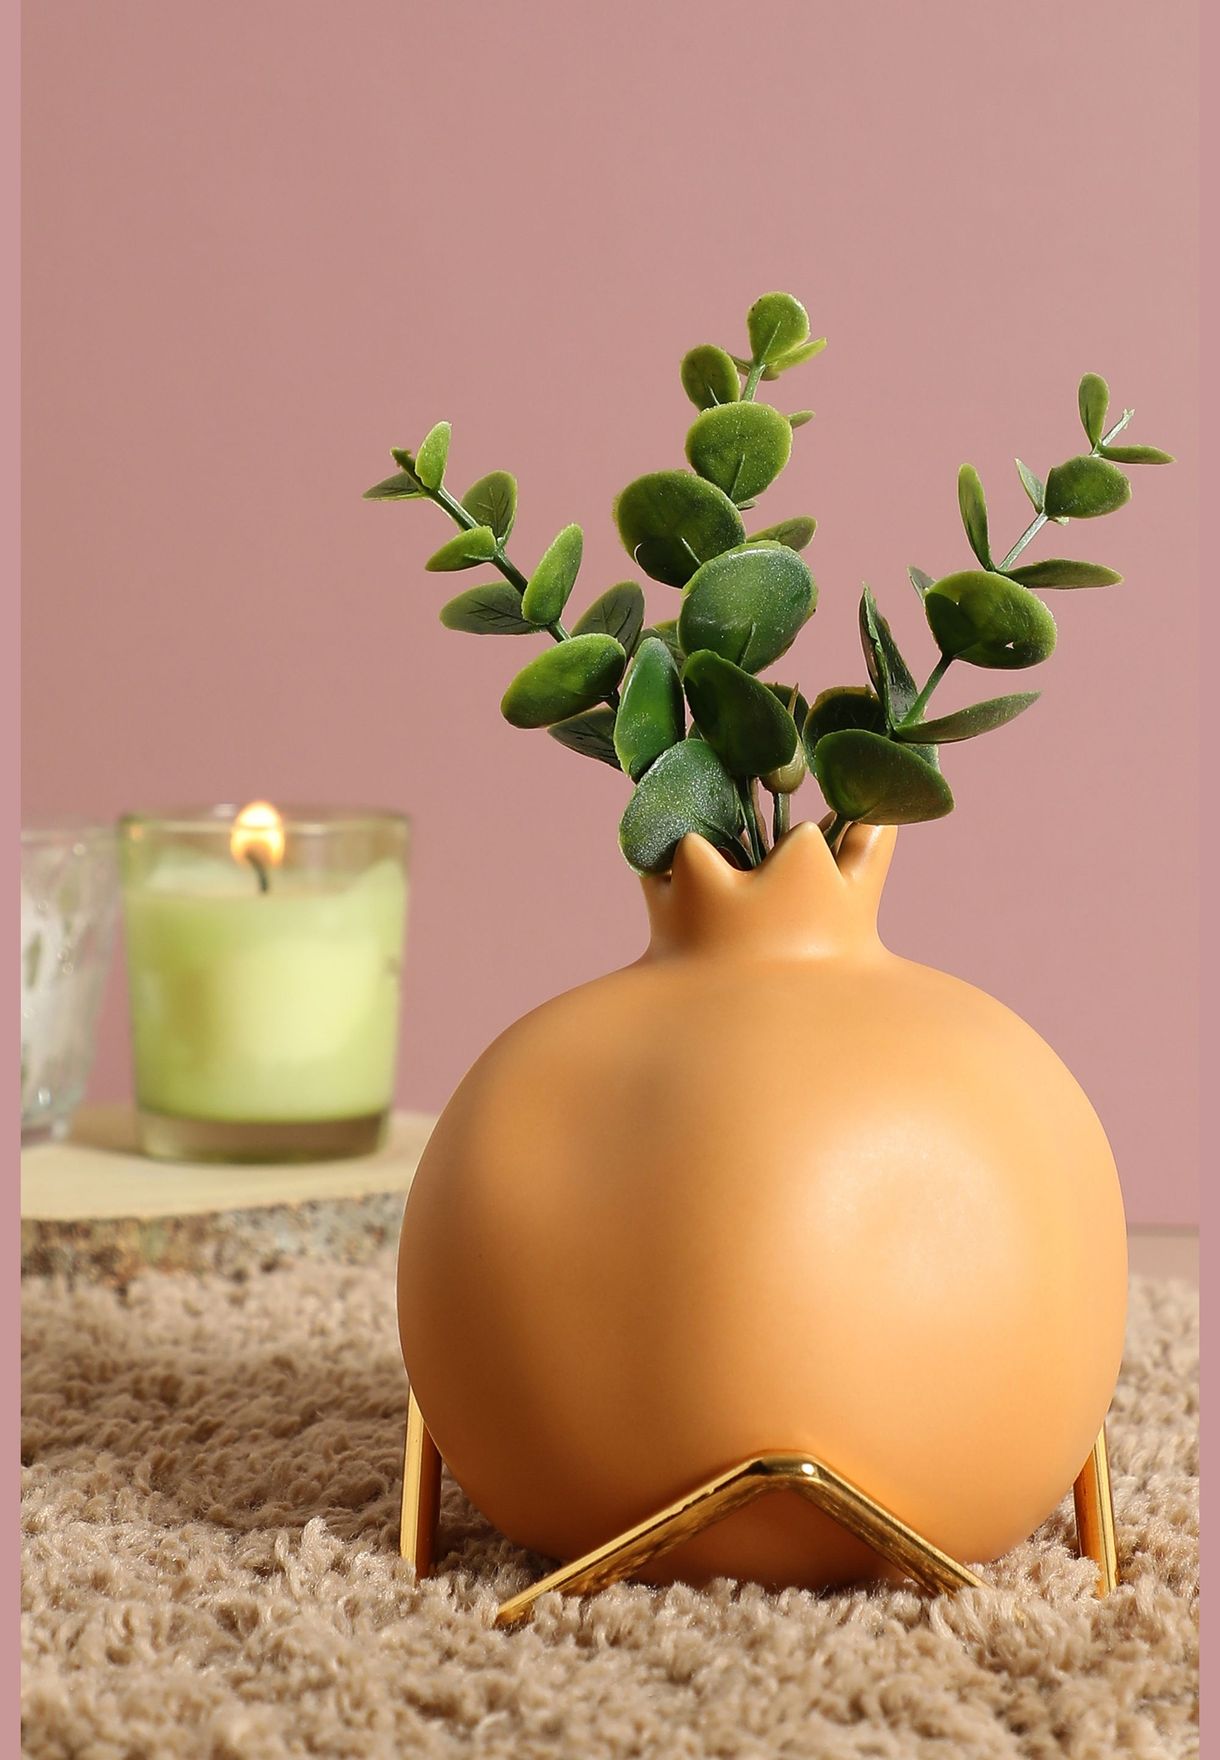 Fruit Shaped Modern Ceramic Flower Vase For Home Decor 